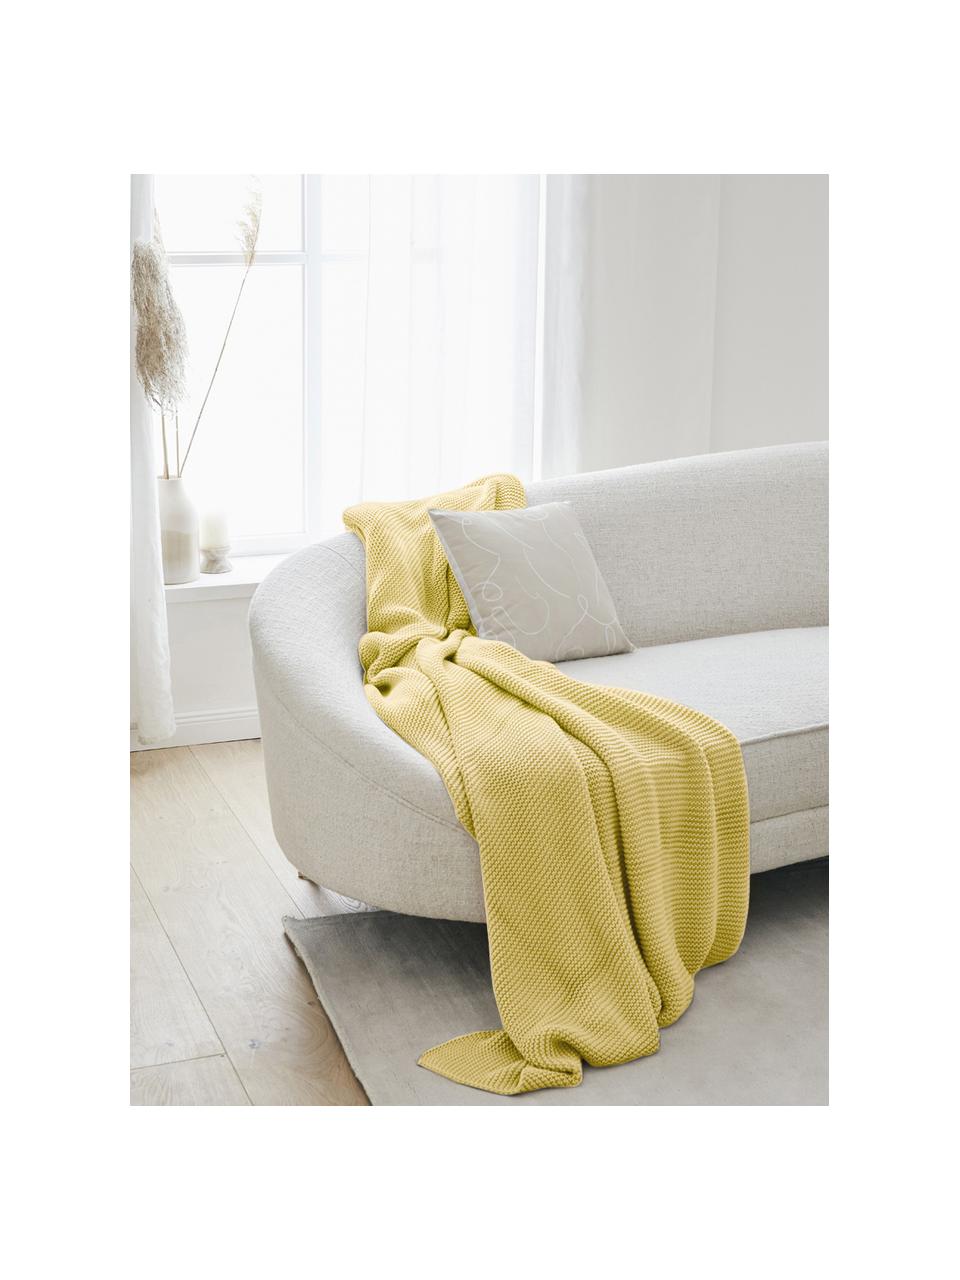 Coperta a maglia in cotone organico giallo chiaro Adalyn, 100% cotone organico, certificato GOTS, Giallo chiaro, Larg. 150 x Lung. 200 cm